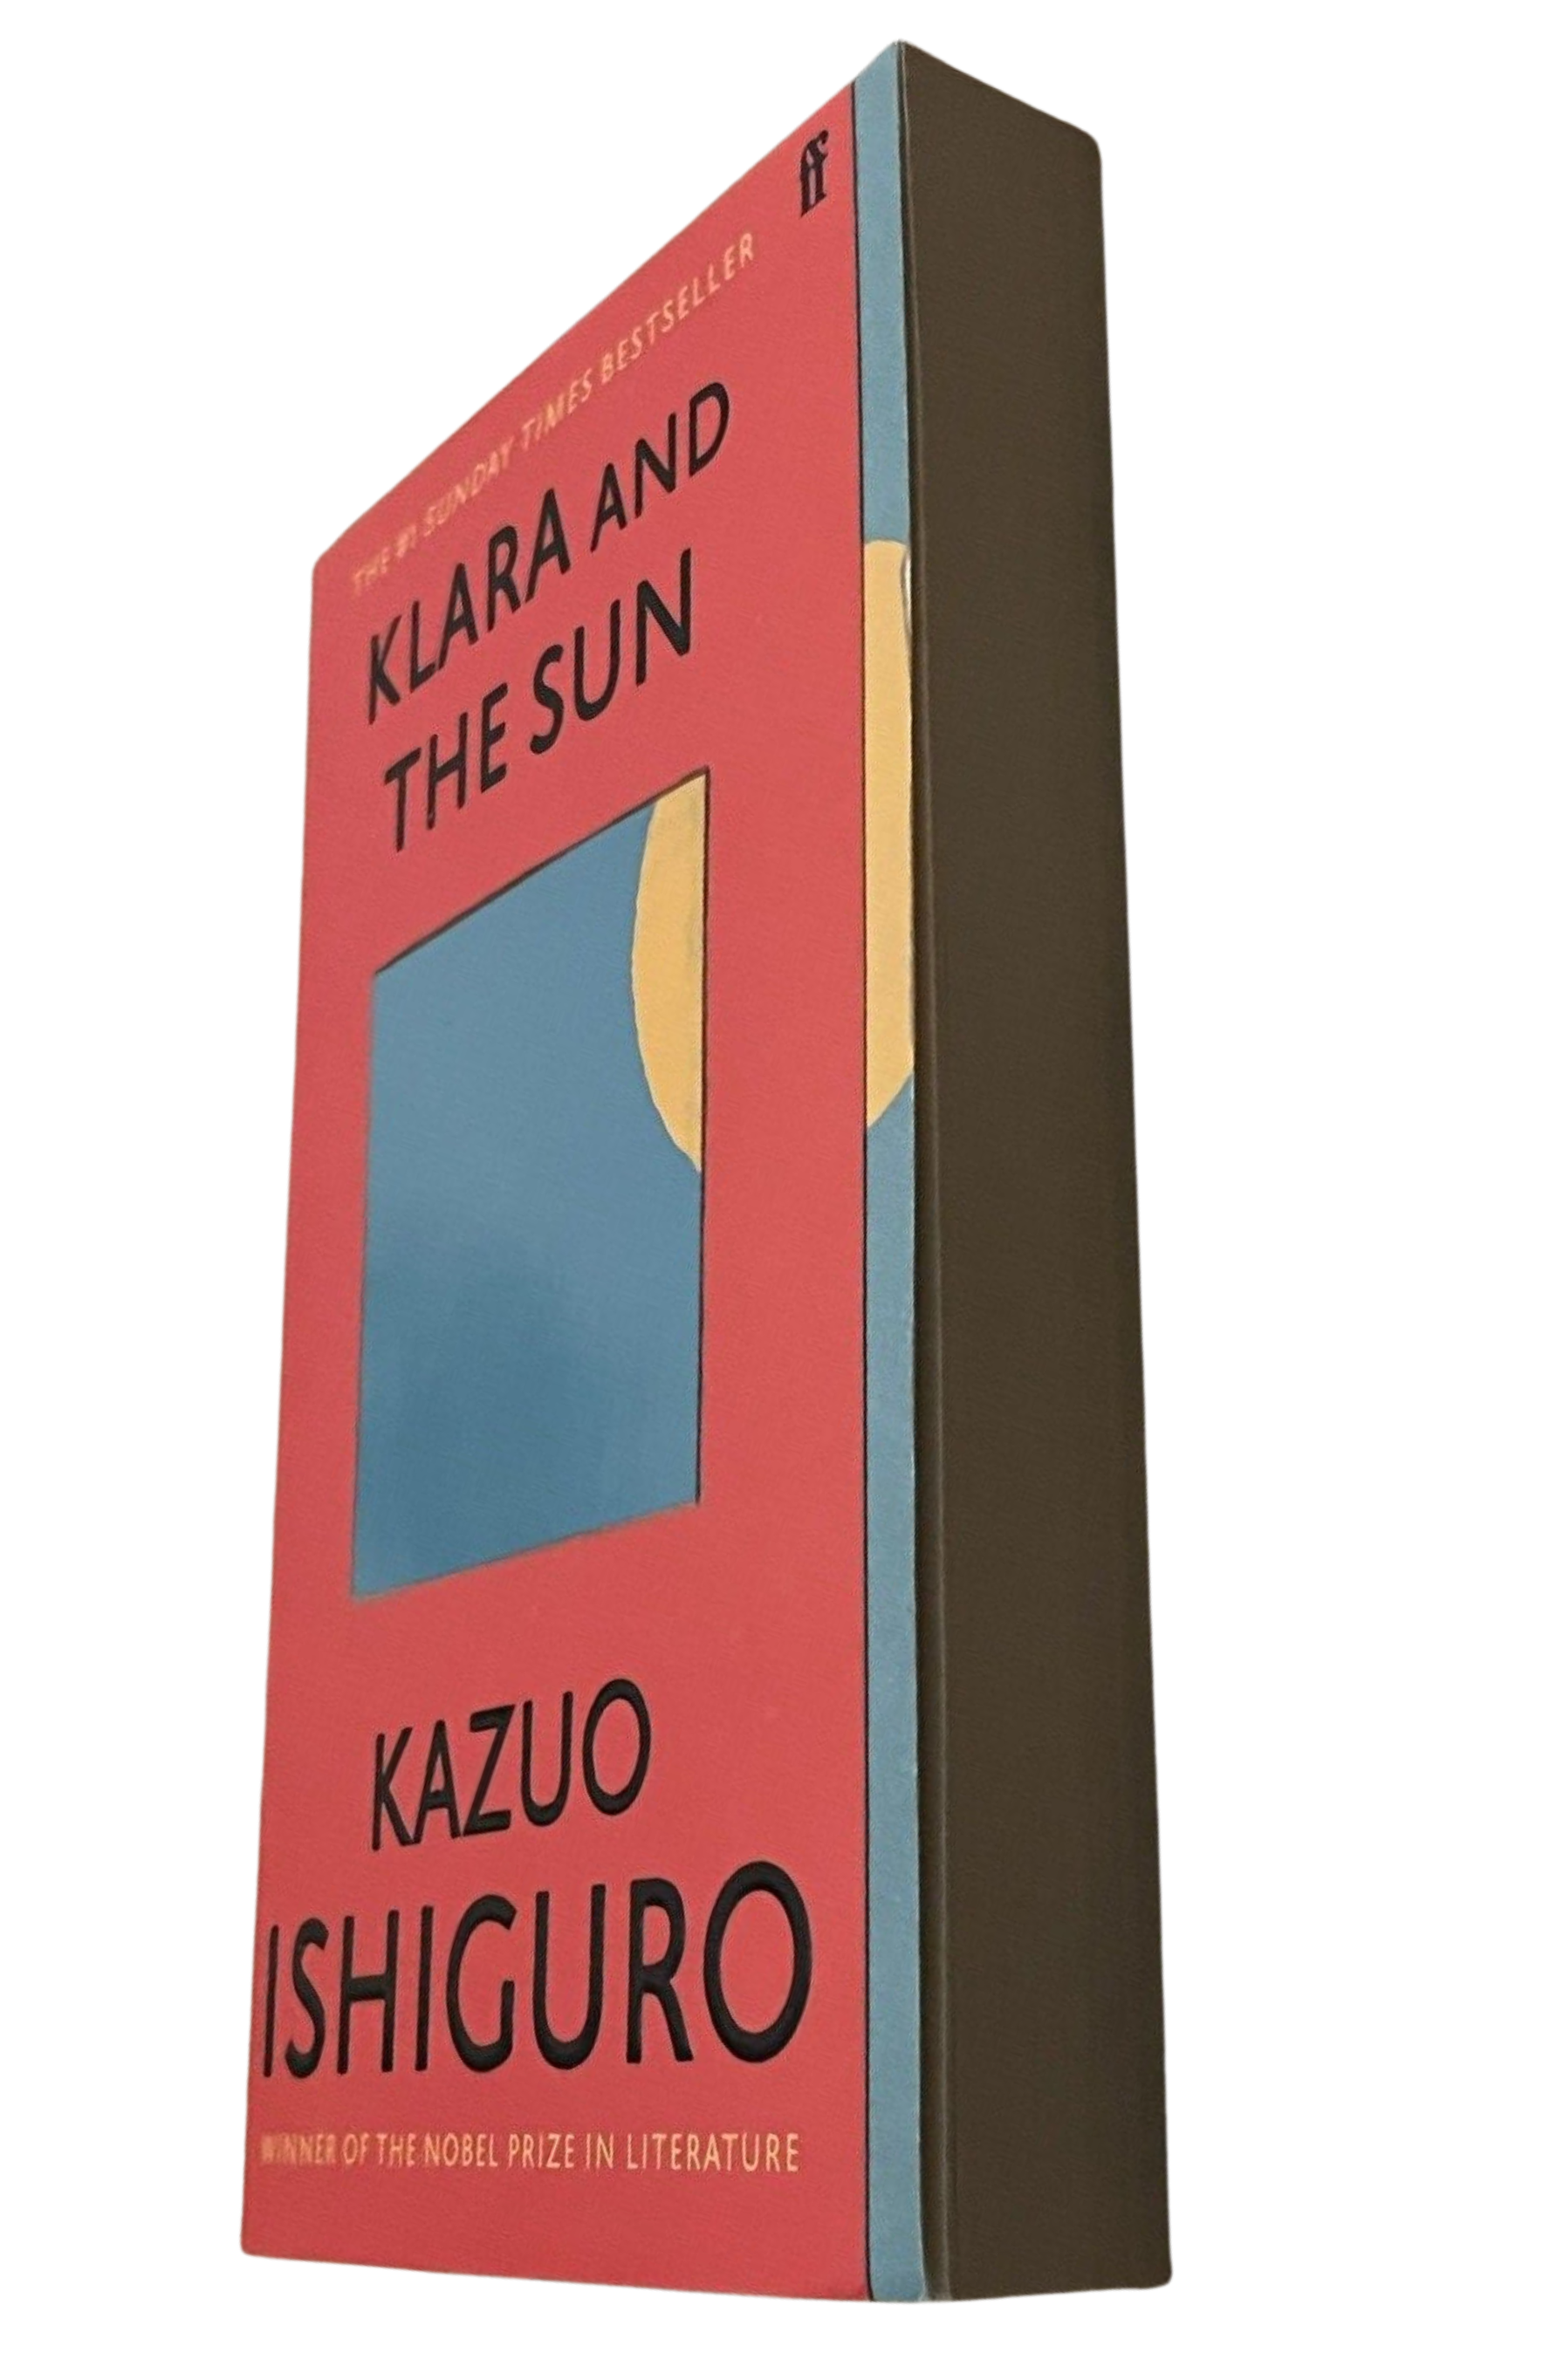 Klara and the Sun by Kazuo Ishiguro at BIBLIONEPAL Bookstore